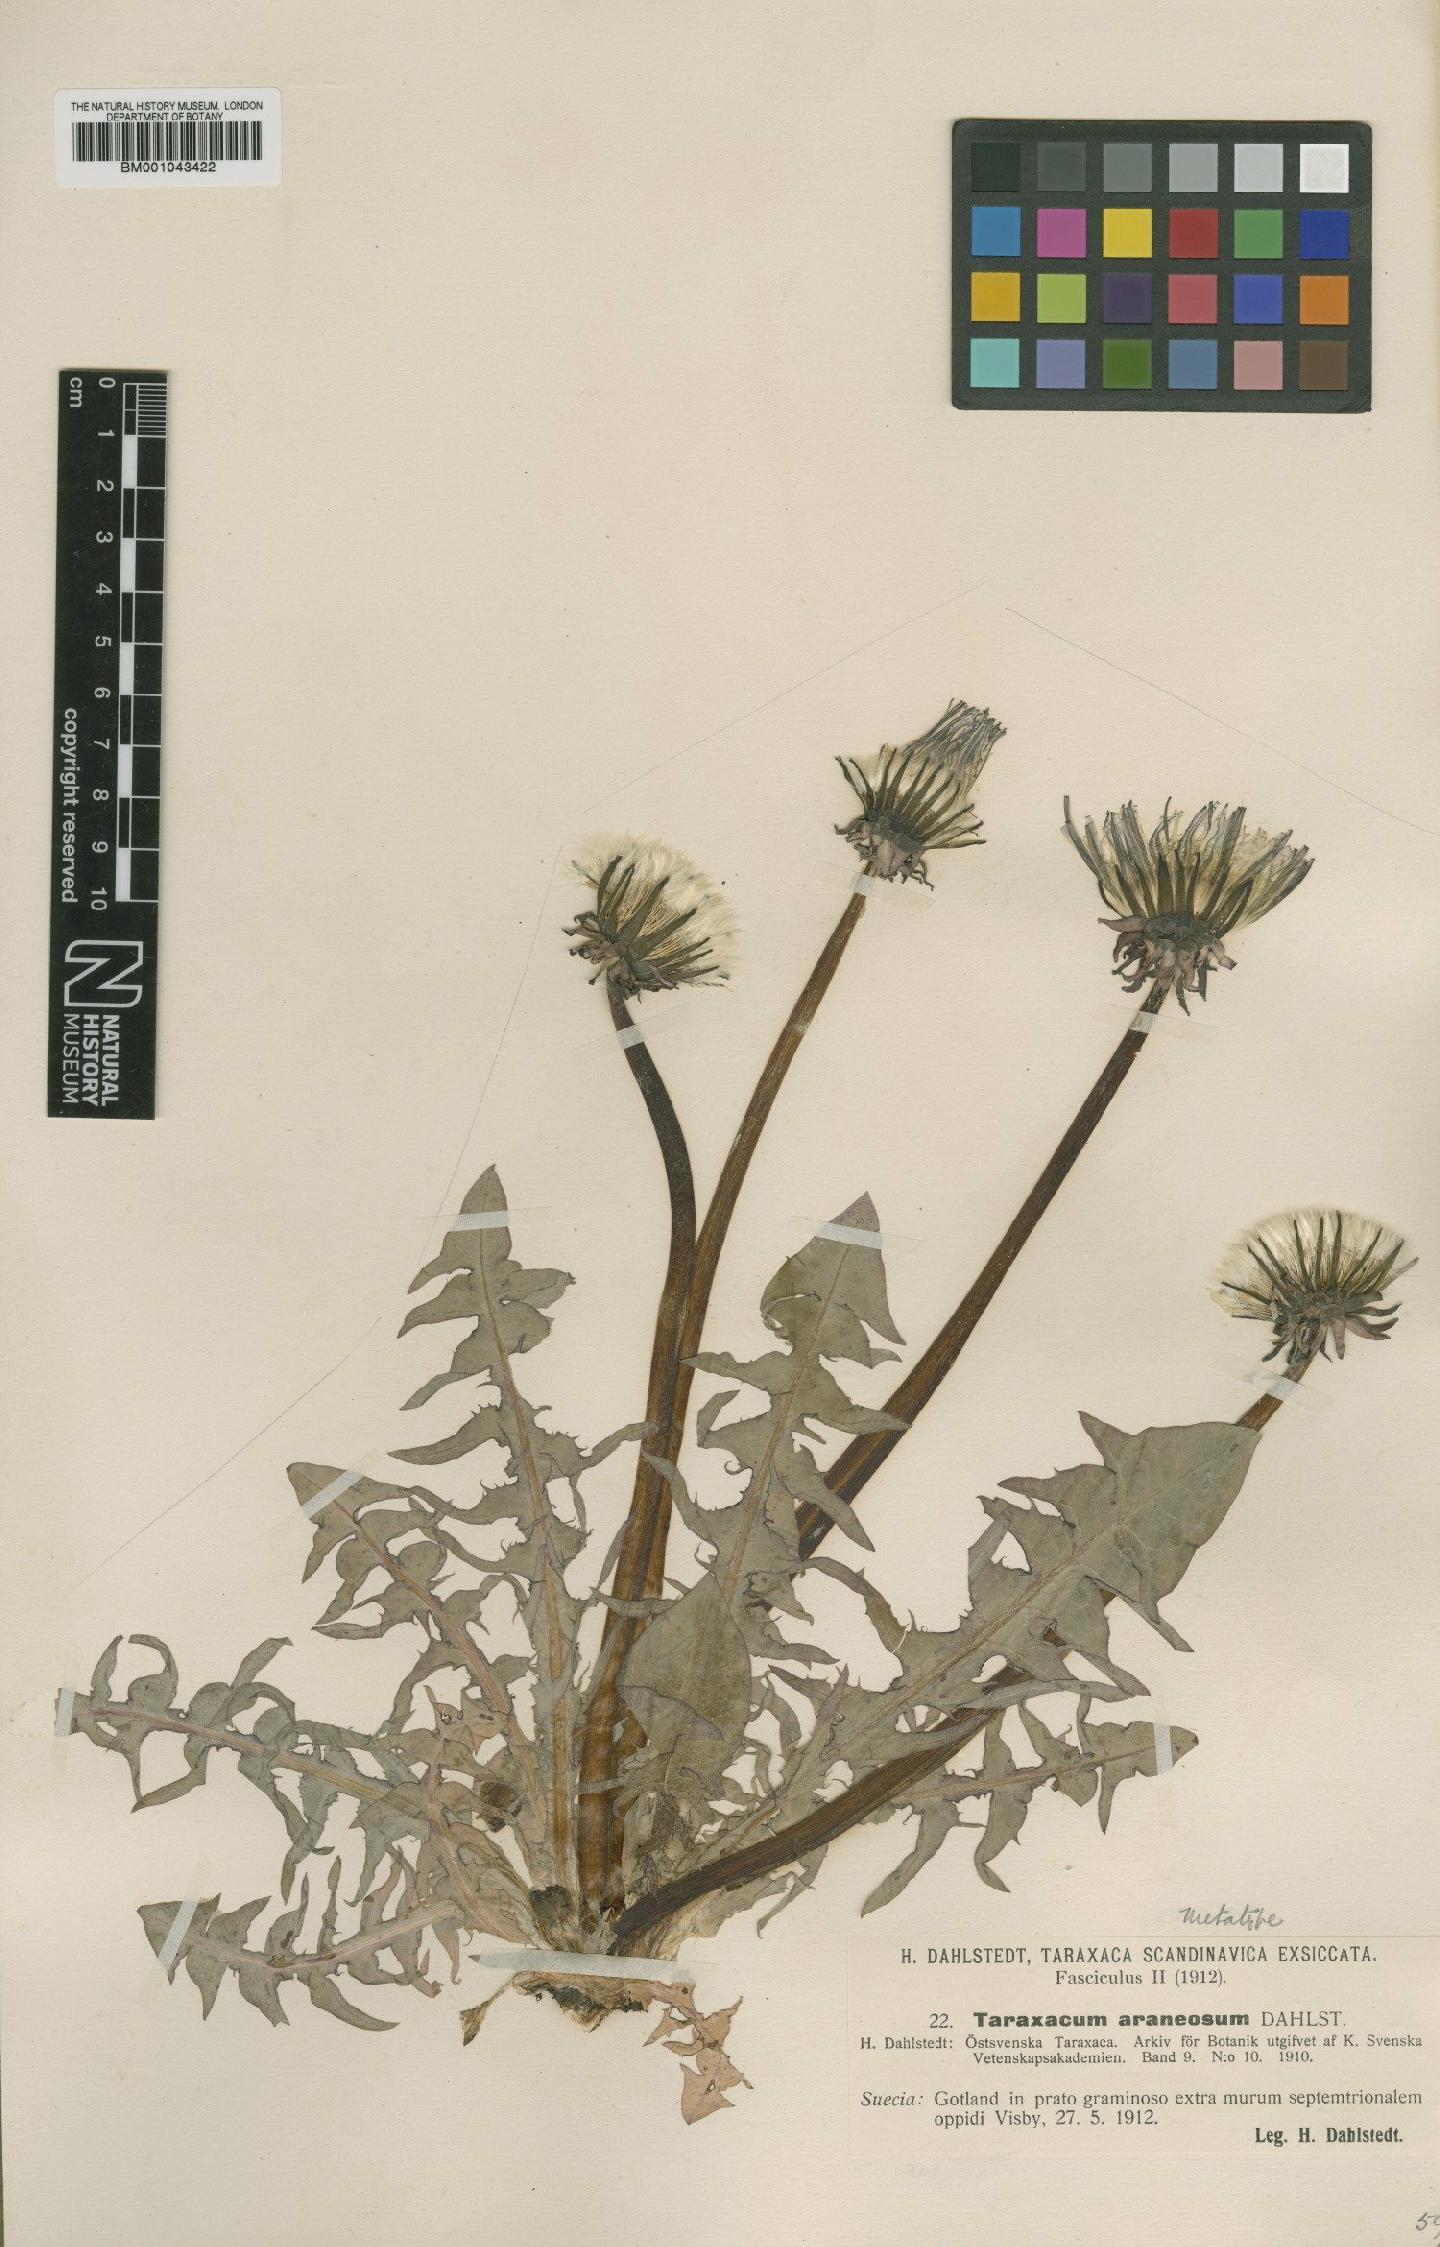 To NHMUK collection (Taraxacum araneosum Dahlst.; Type; NHMUK:ecatalogue:1998110)